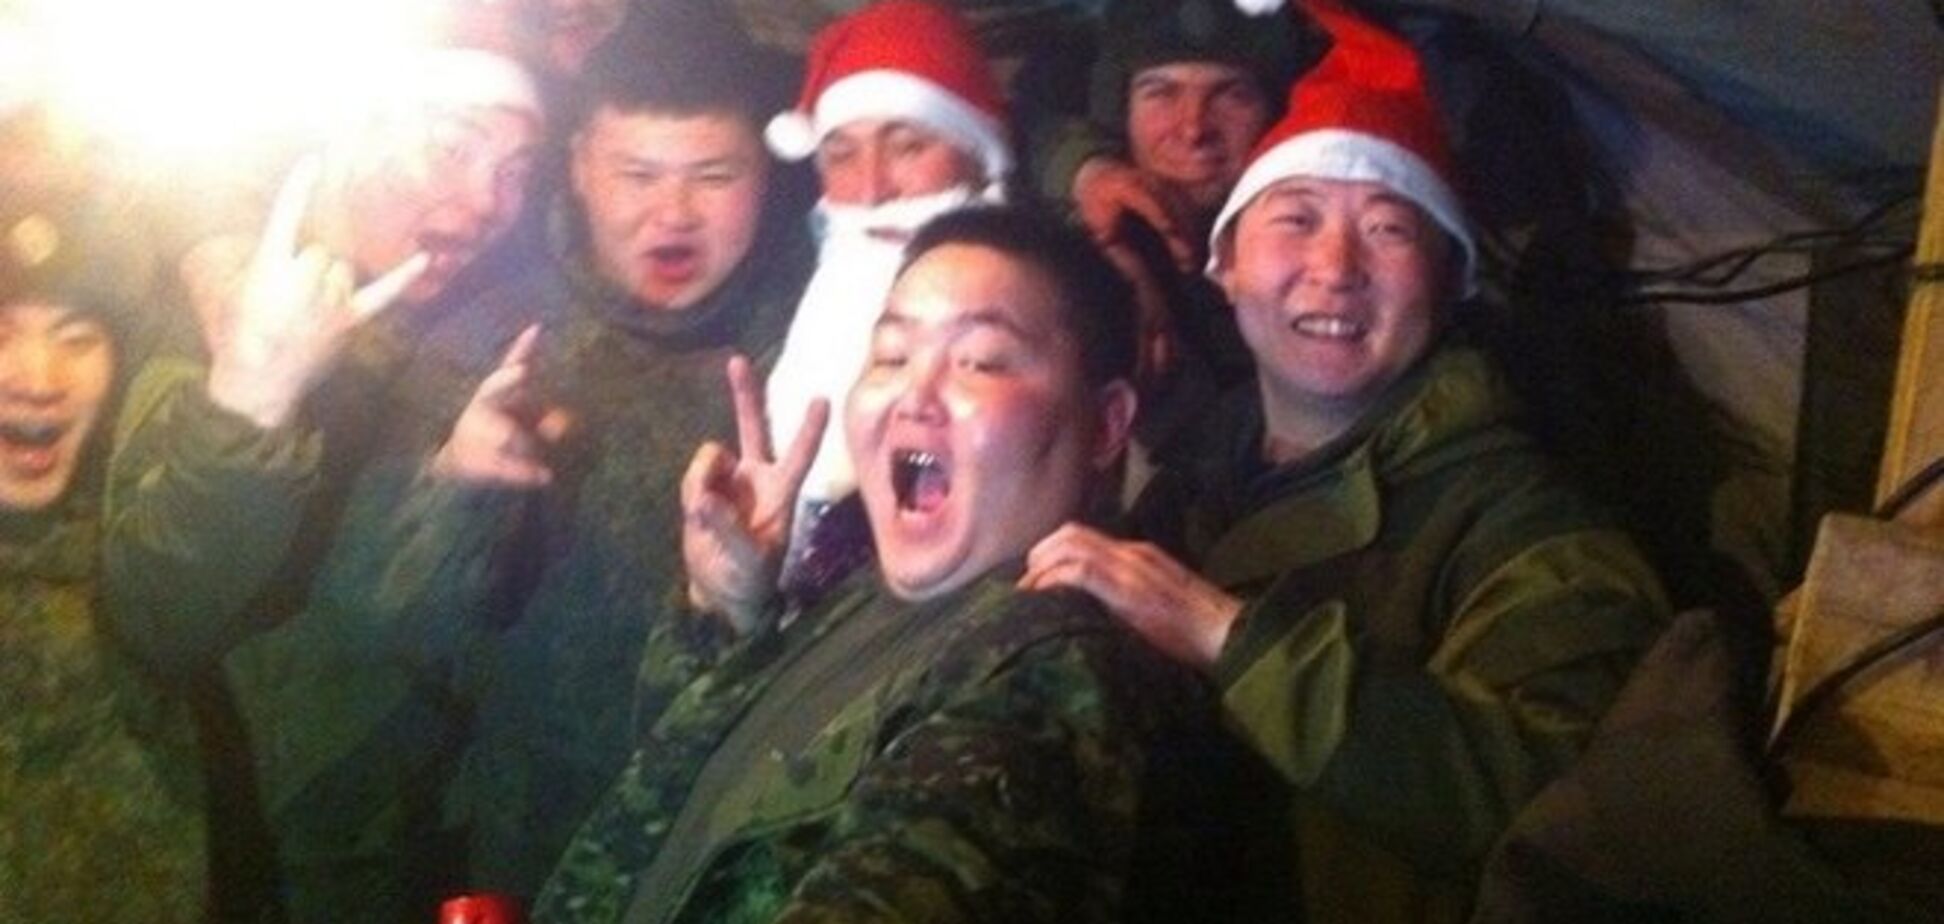 Путінські вояки весело відсвяткували Новий рік під кордоном України: опубліковано фото